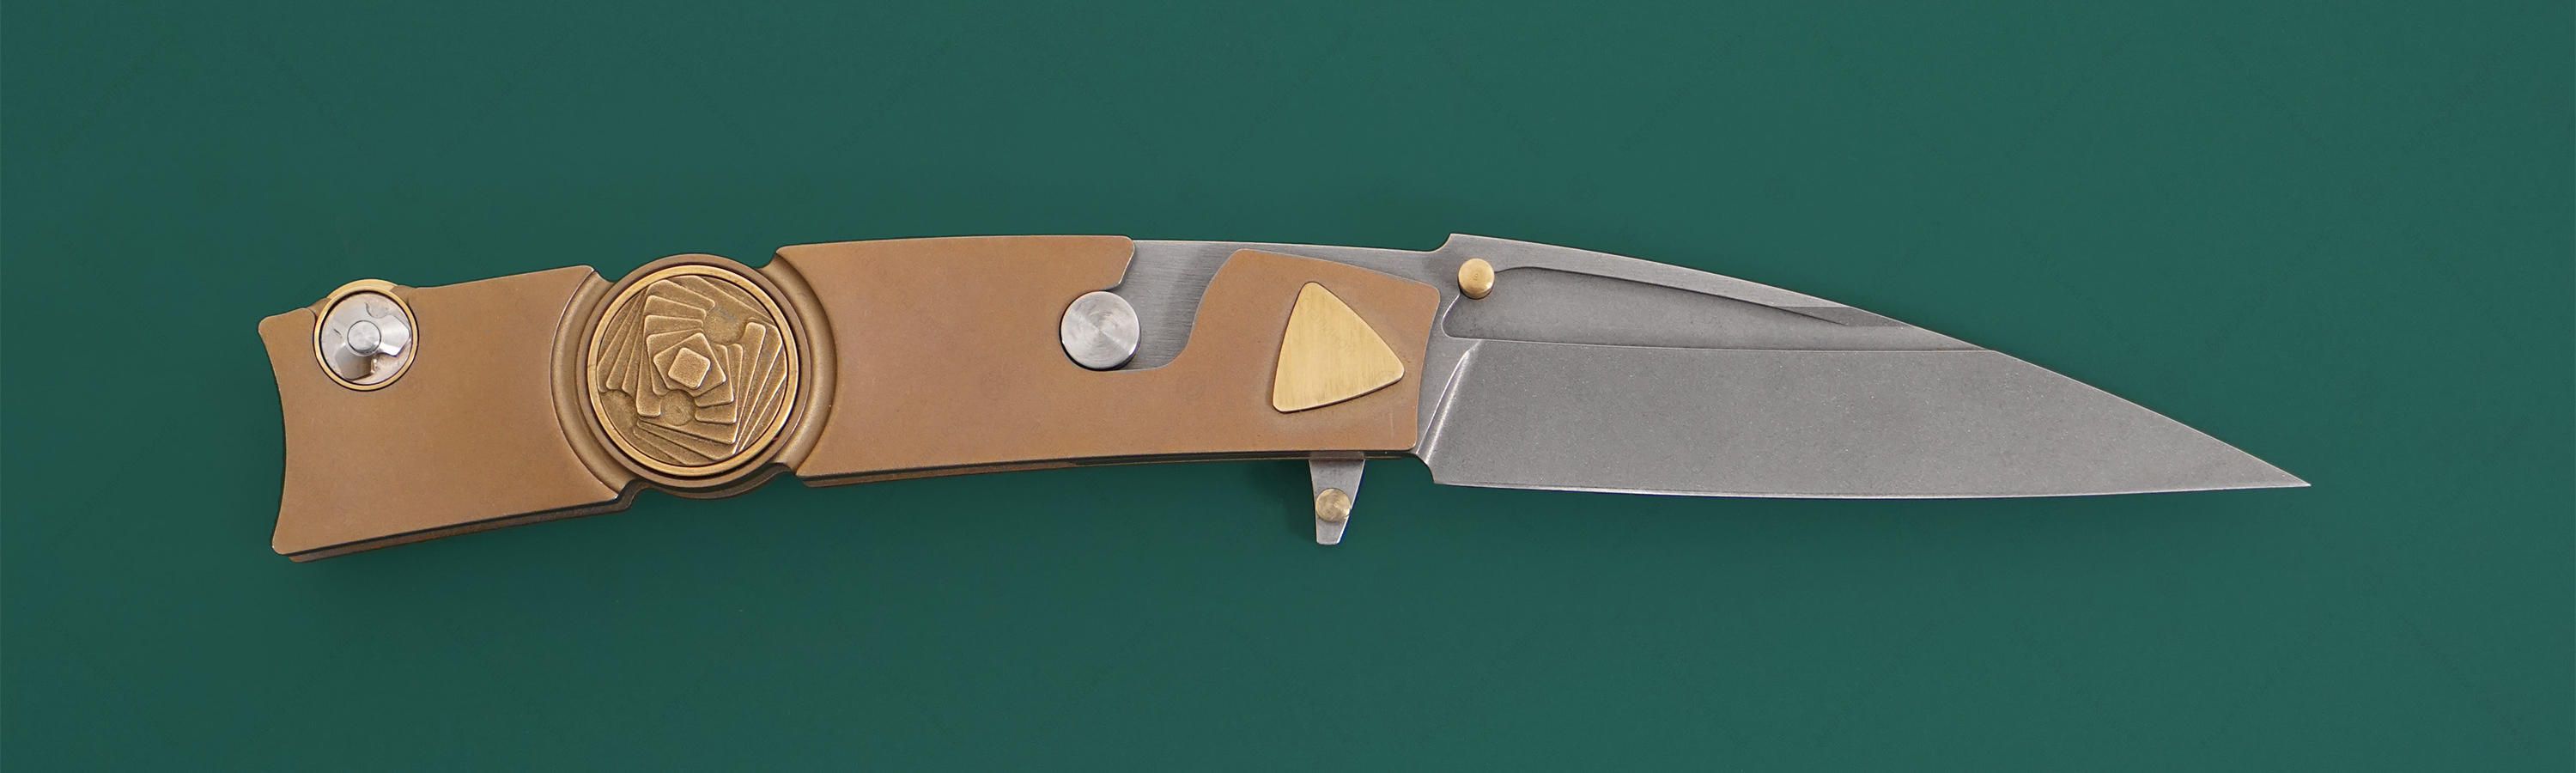 Клинок ножа из стали RWL-34